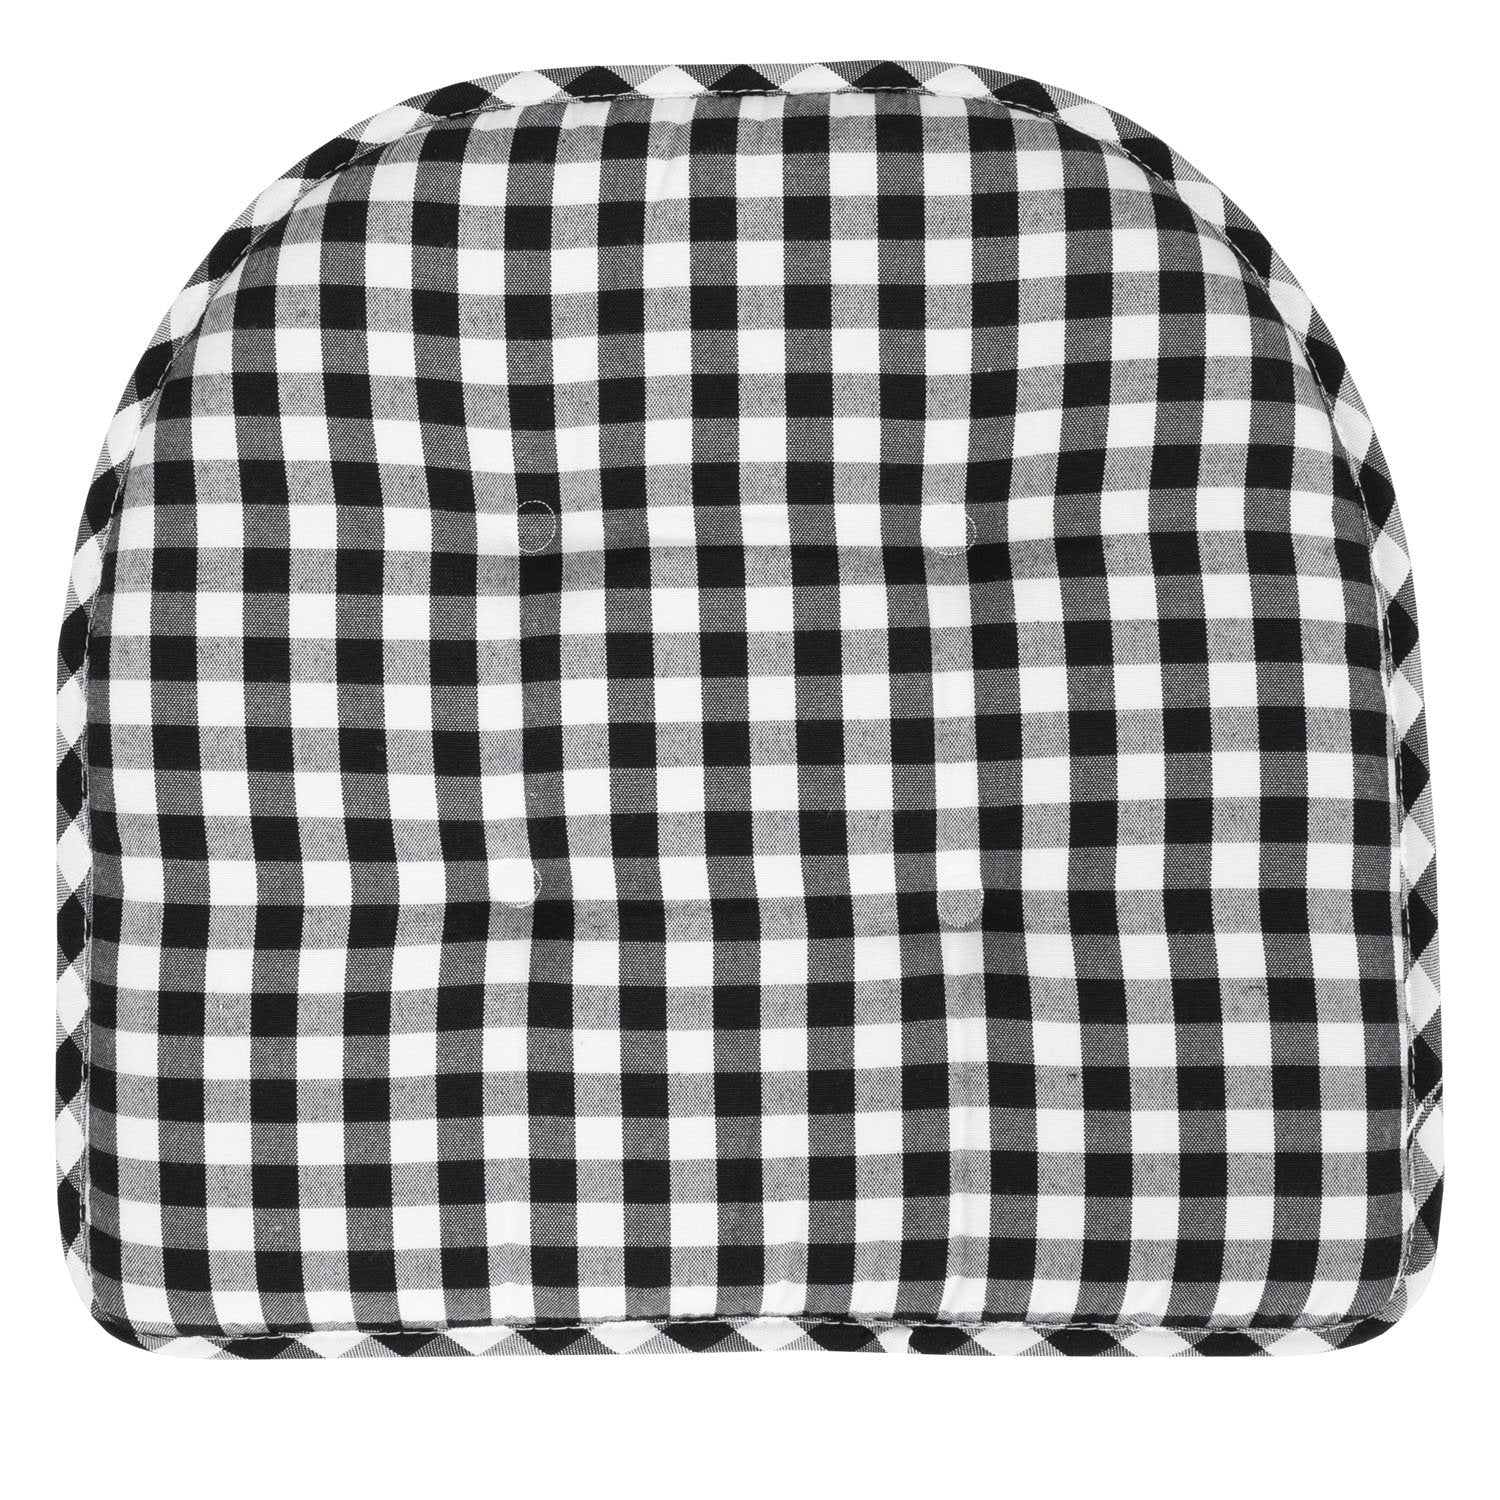 U Shape Chair Cushion Set Checkered Black White - Top